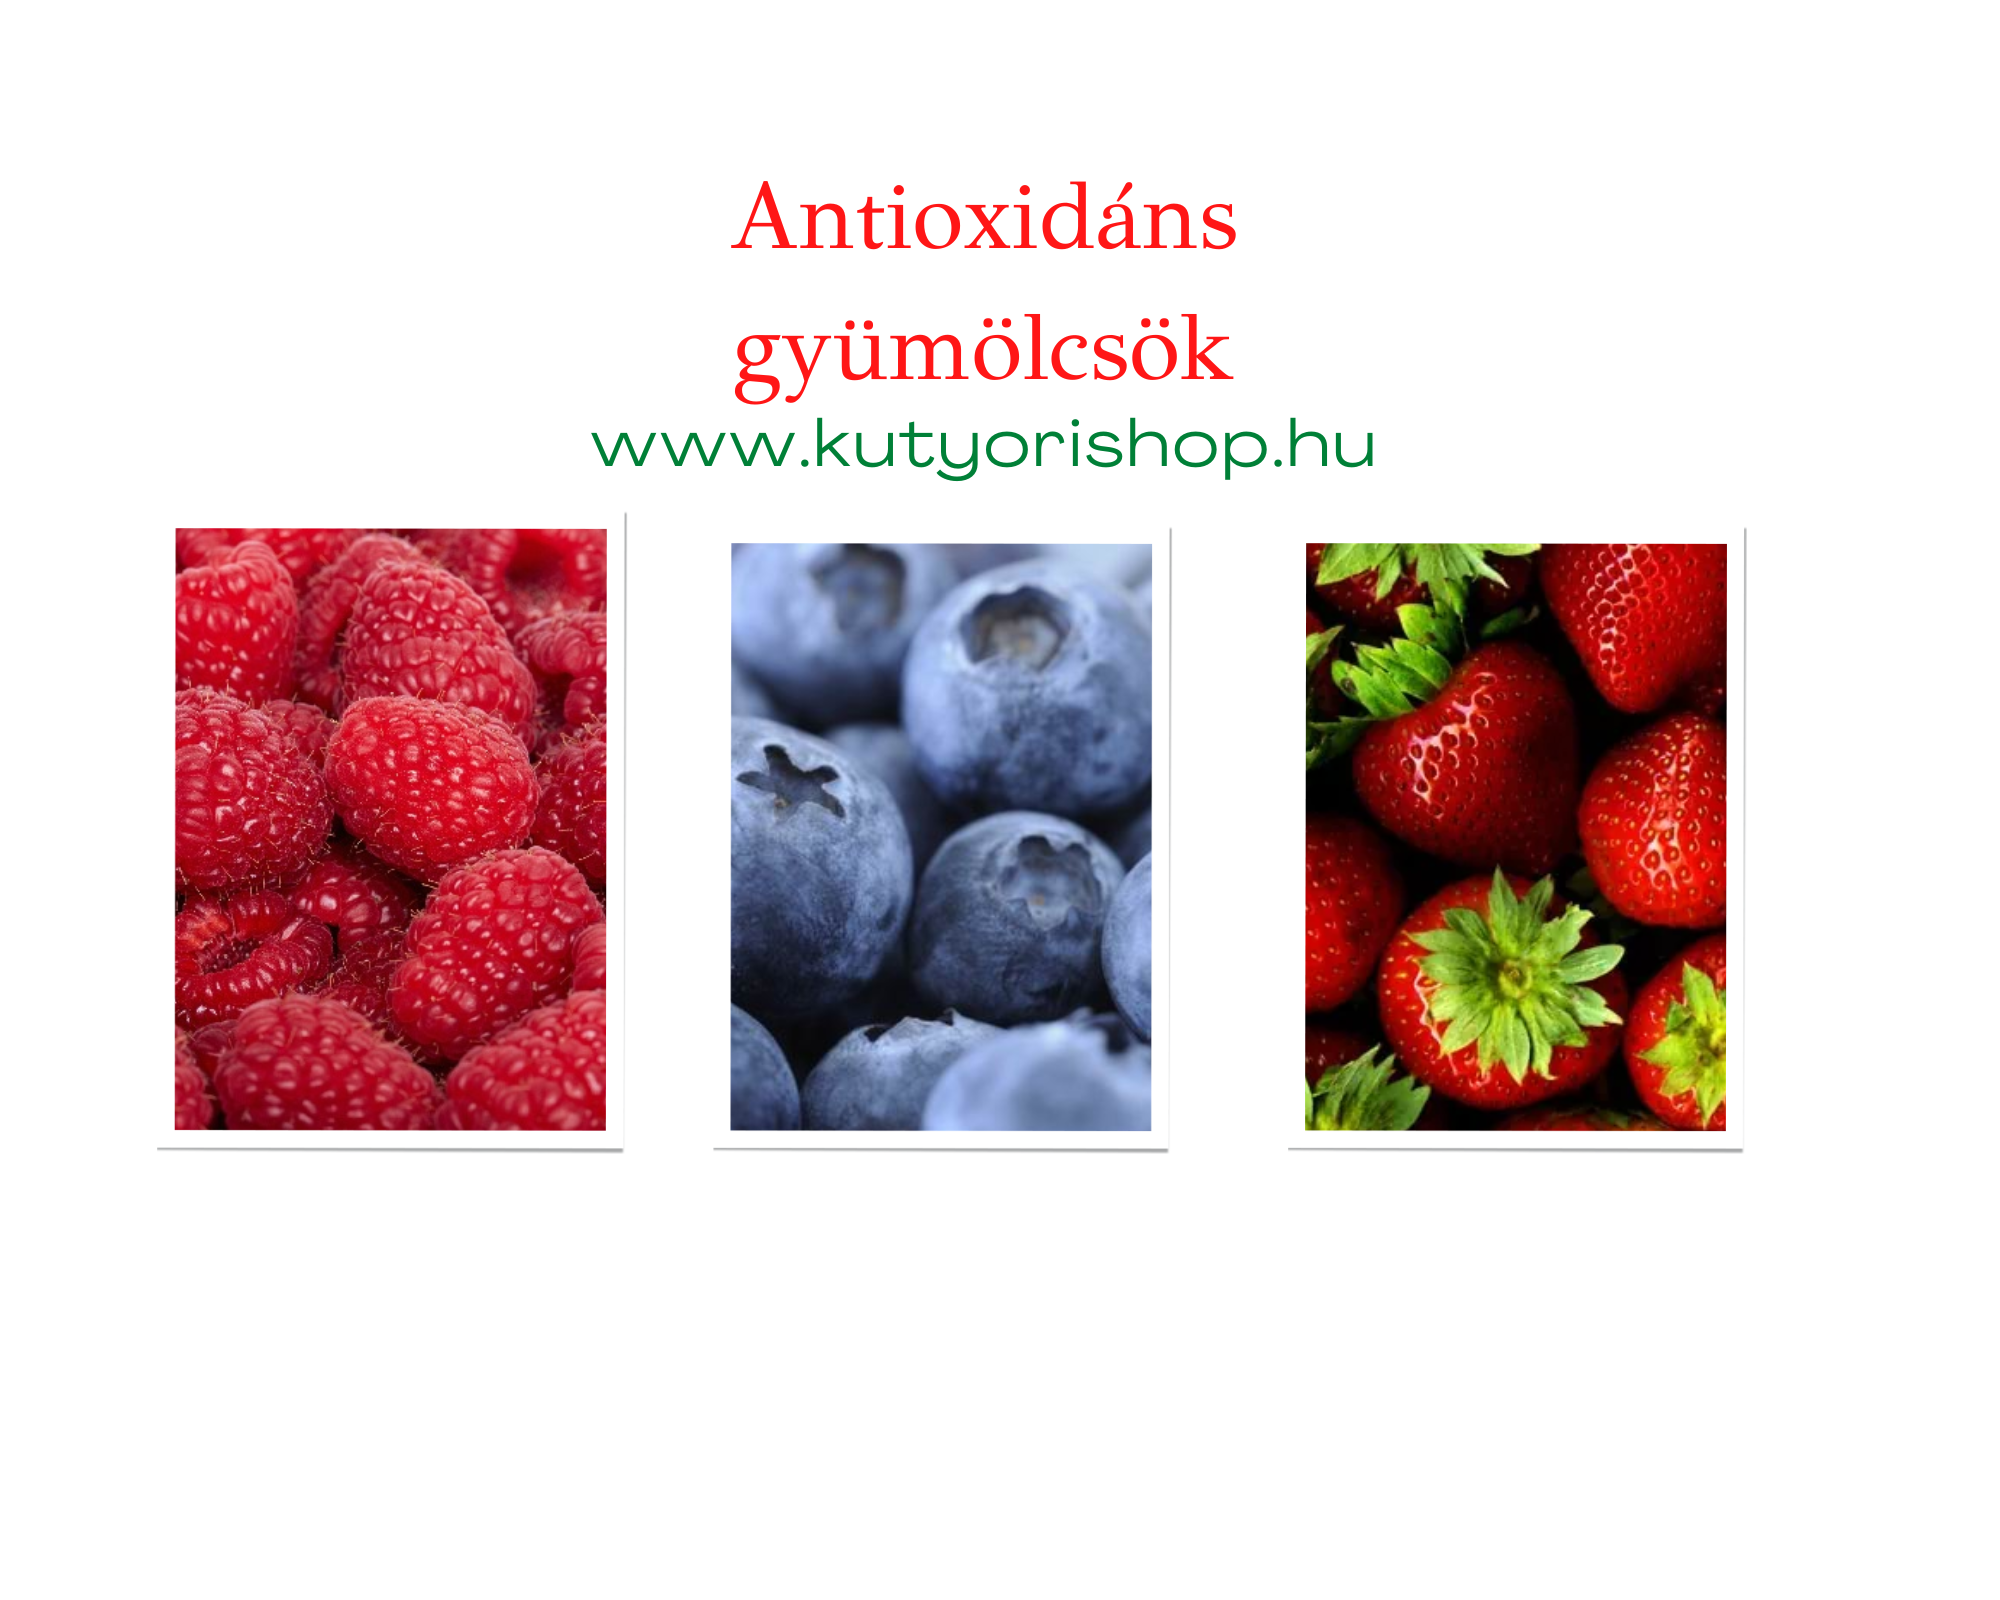 3 magas antioxidáns tartalmú gyümölcs